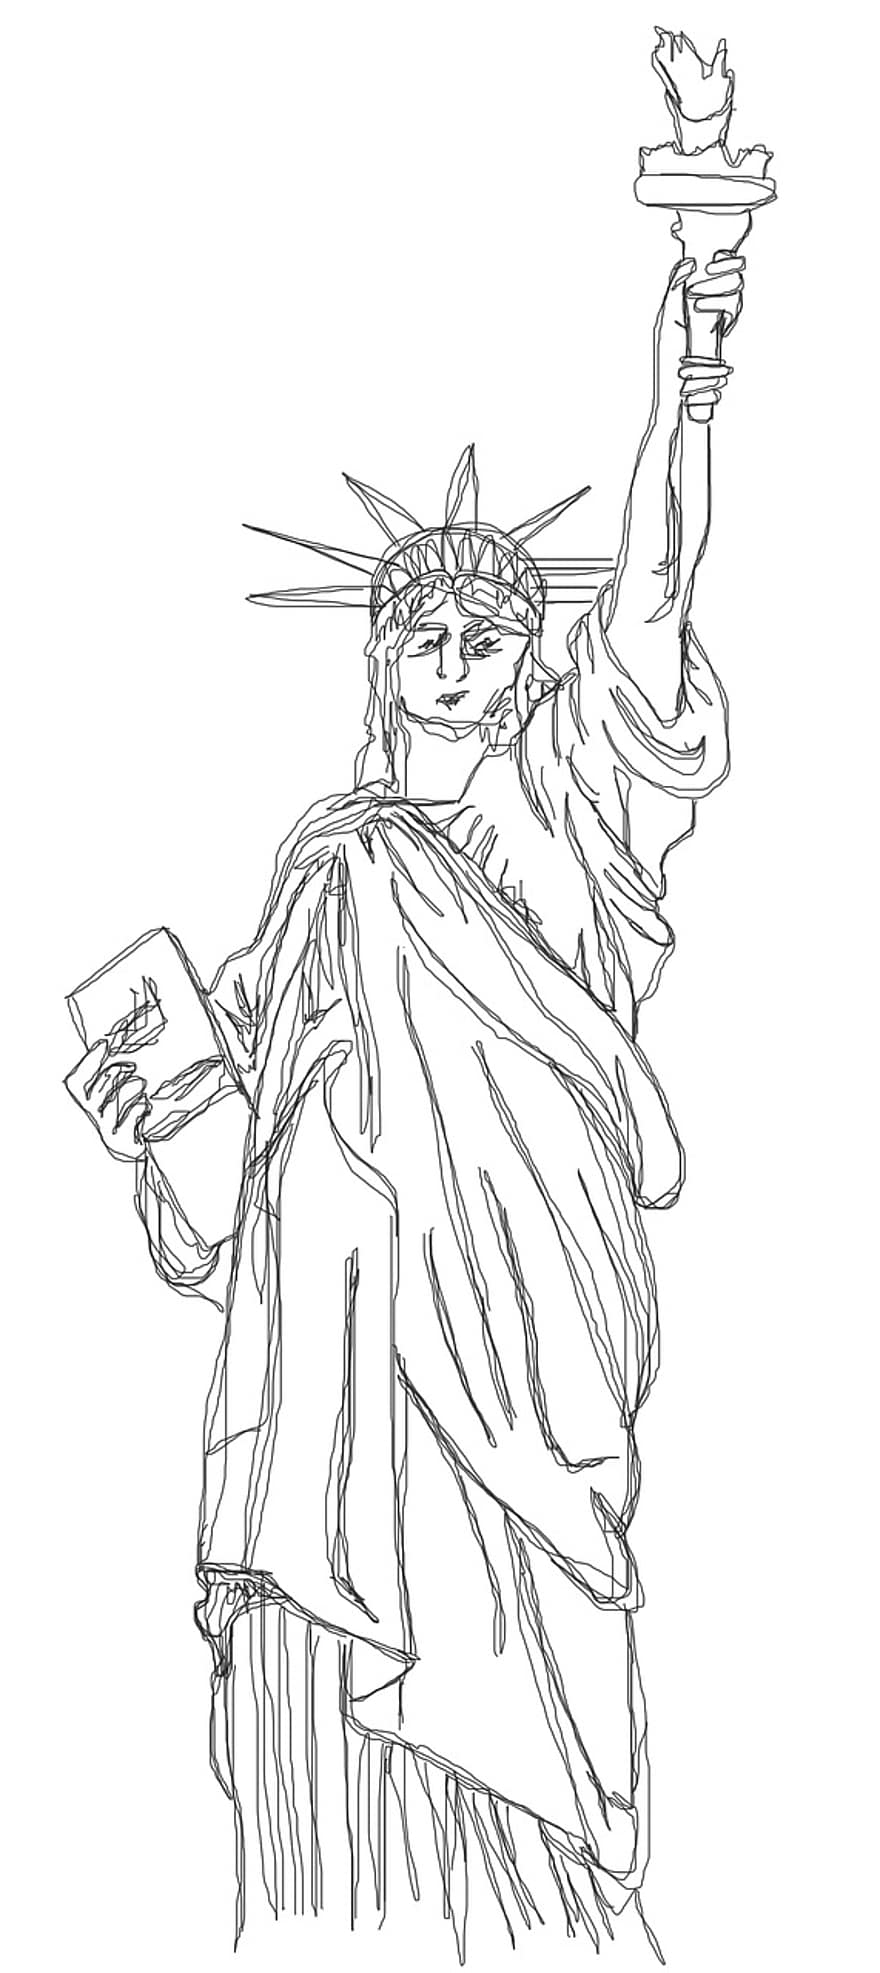 Szabadságszobor, Amerika, New York, szobor, dom, szimbólum, u s, magasság, fáklya, firkál, doodles